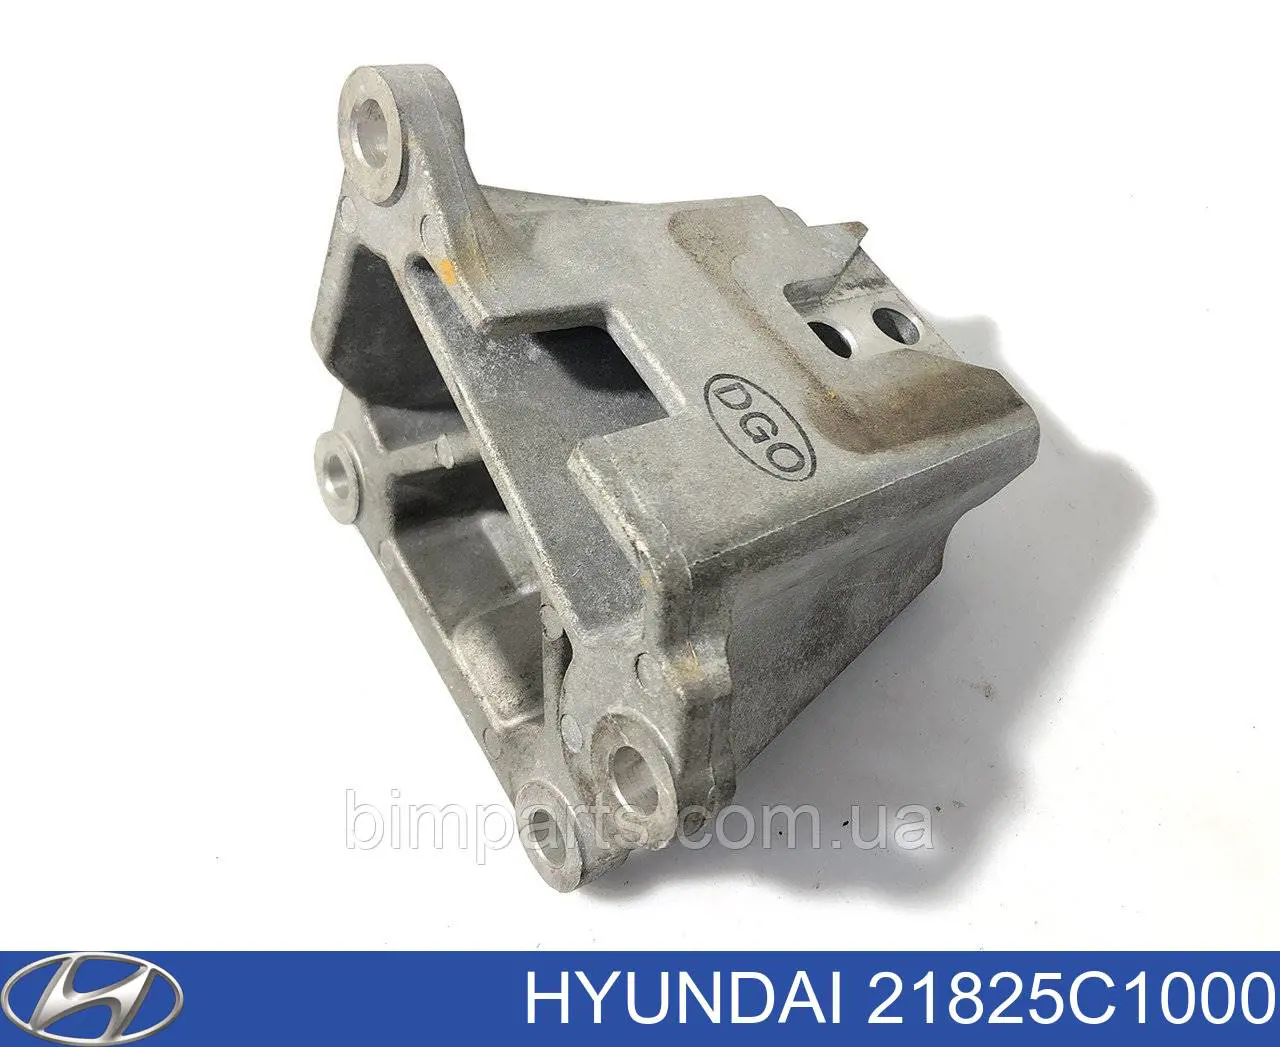 21825C1000 Hyundai/Kia soporte para taco de motor derecho